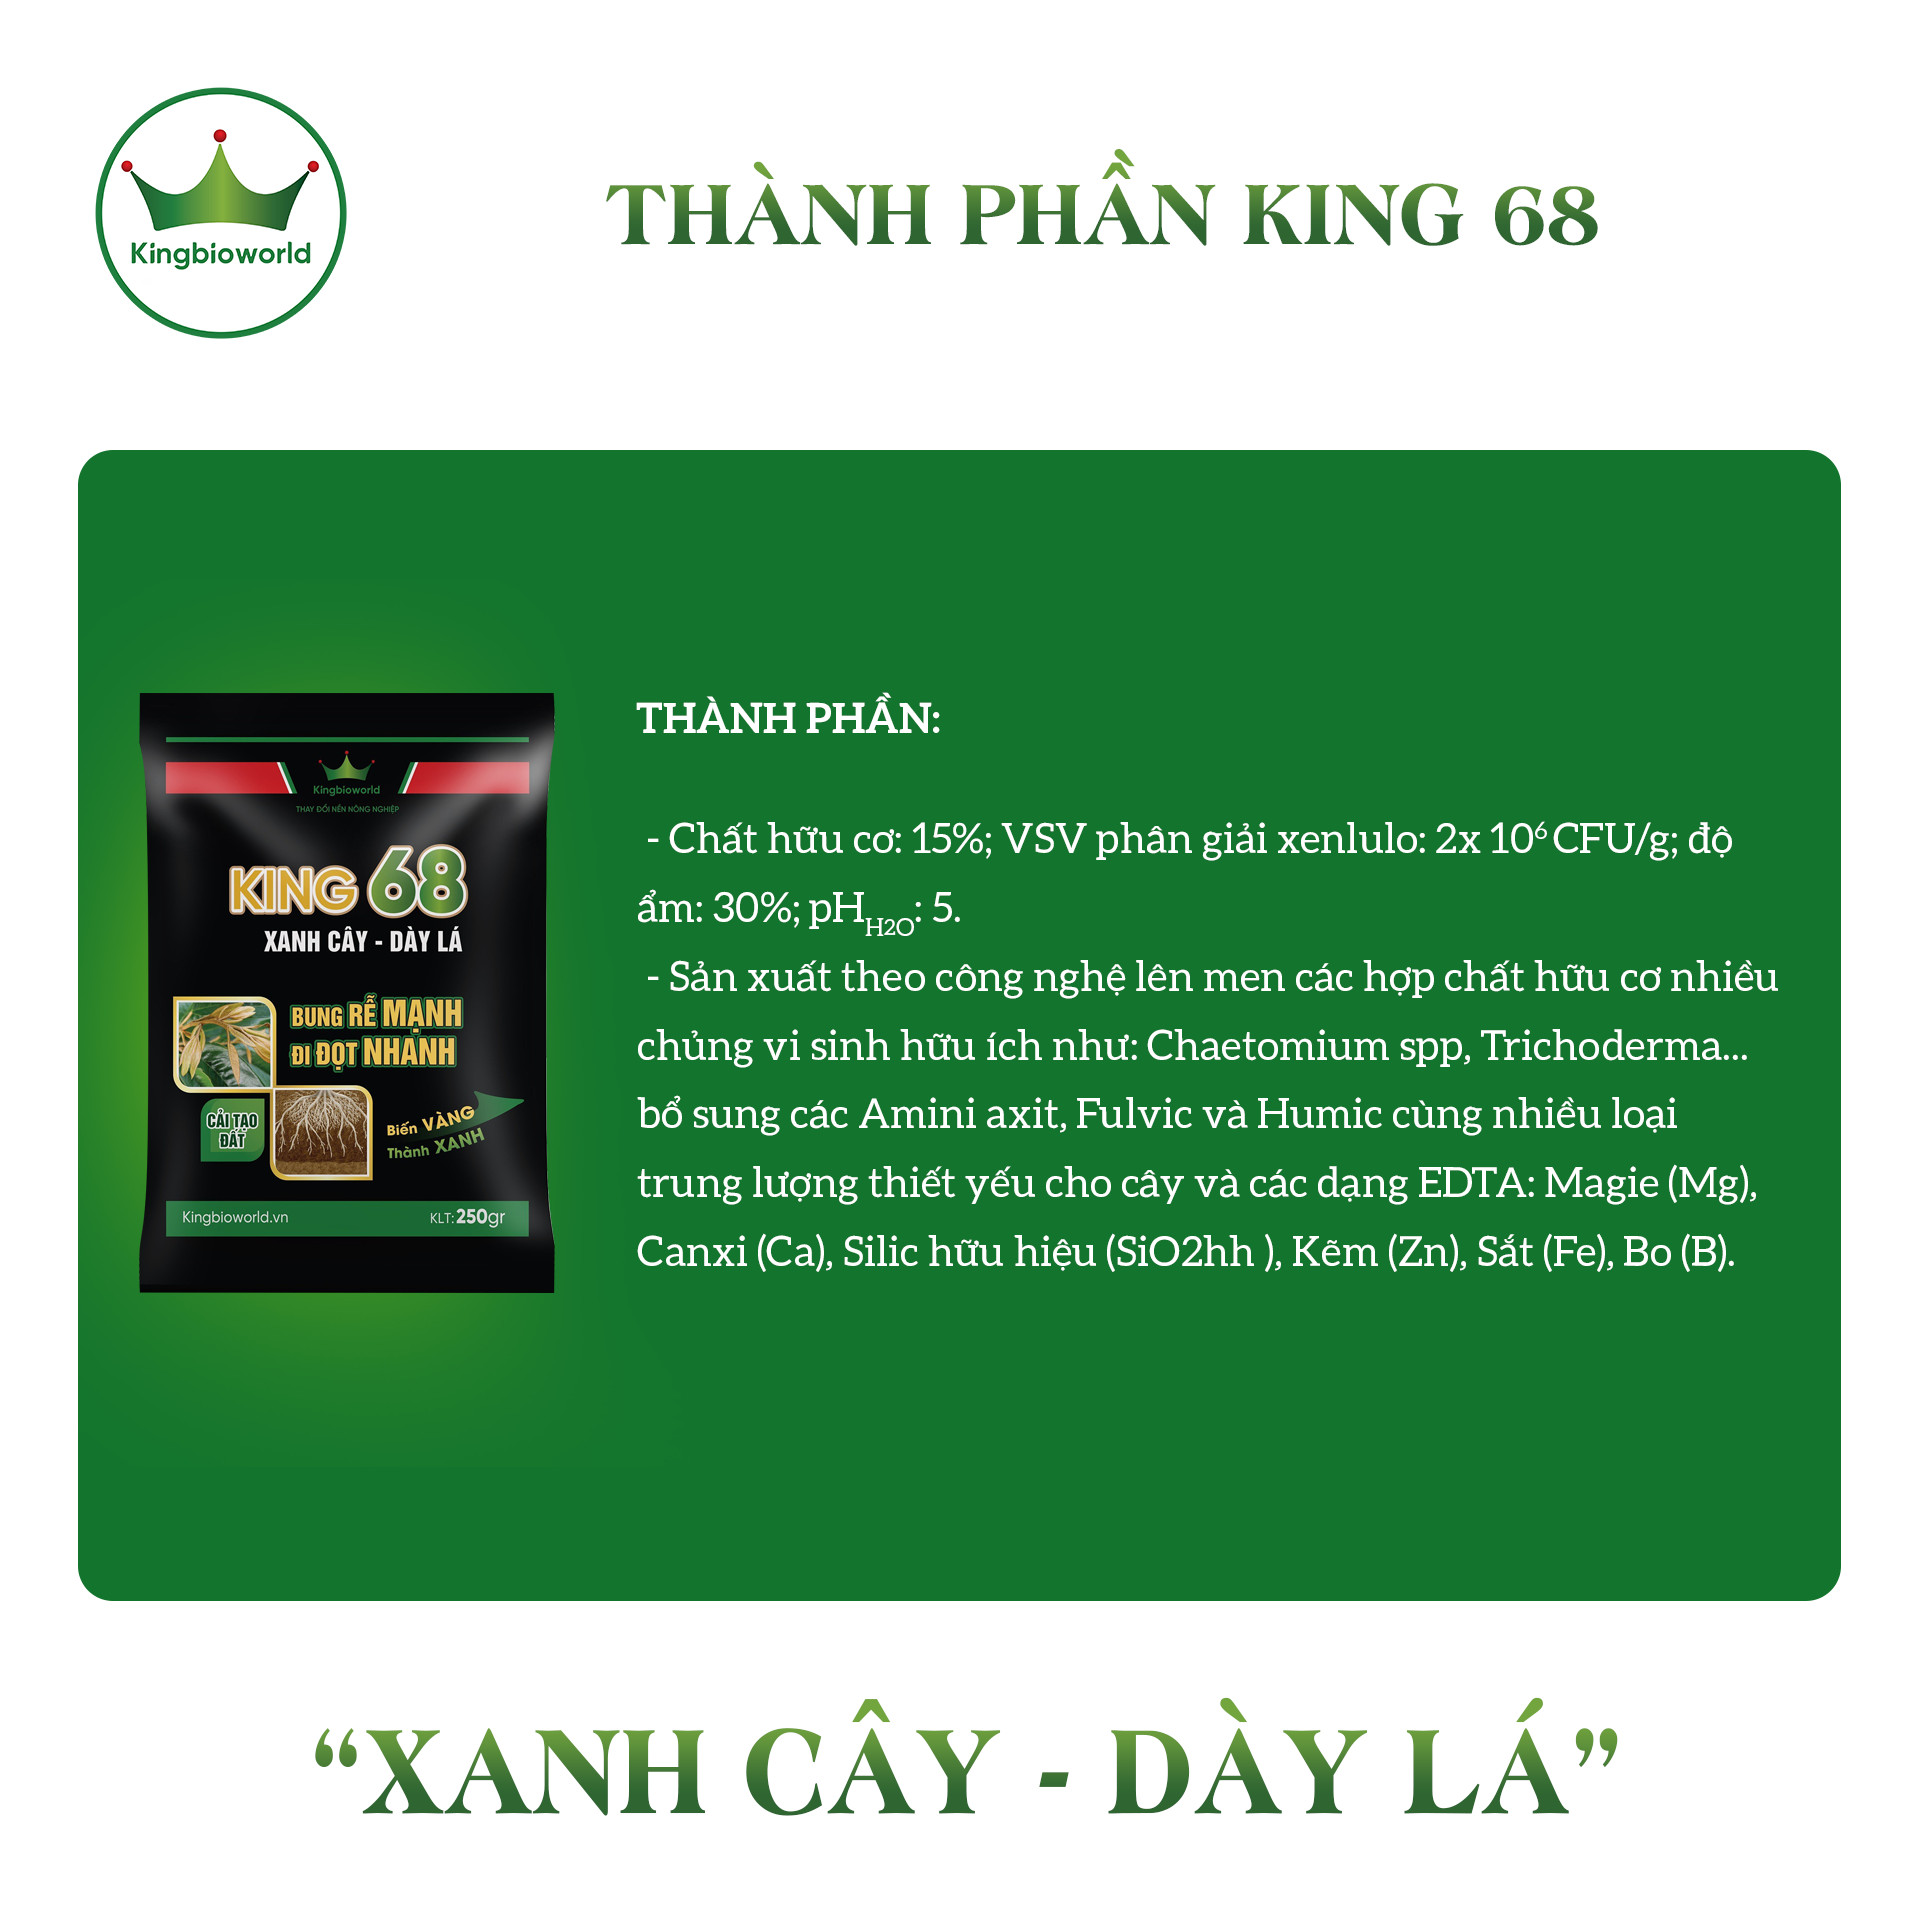 KING 68 250gr - Phân thuốc siêu kích rễ, kích đọt, xanh cây dầy lá, cải tạo đất, phục hồi câ